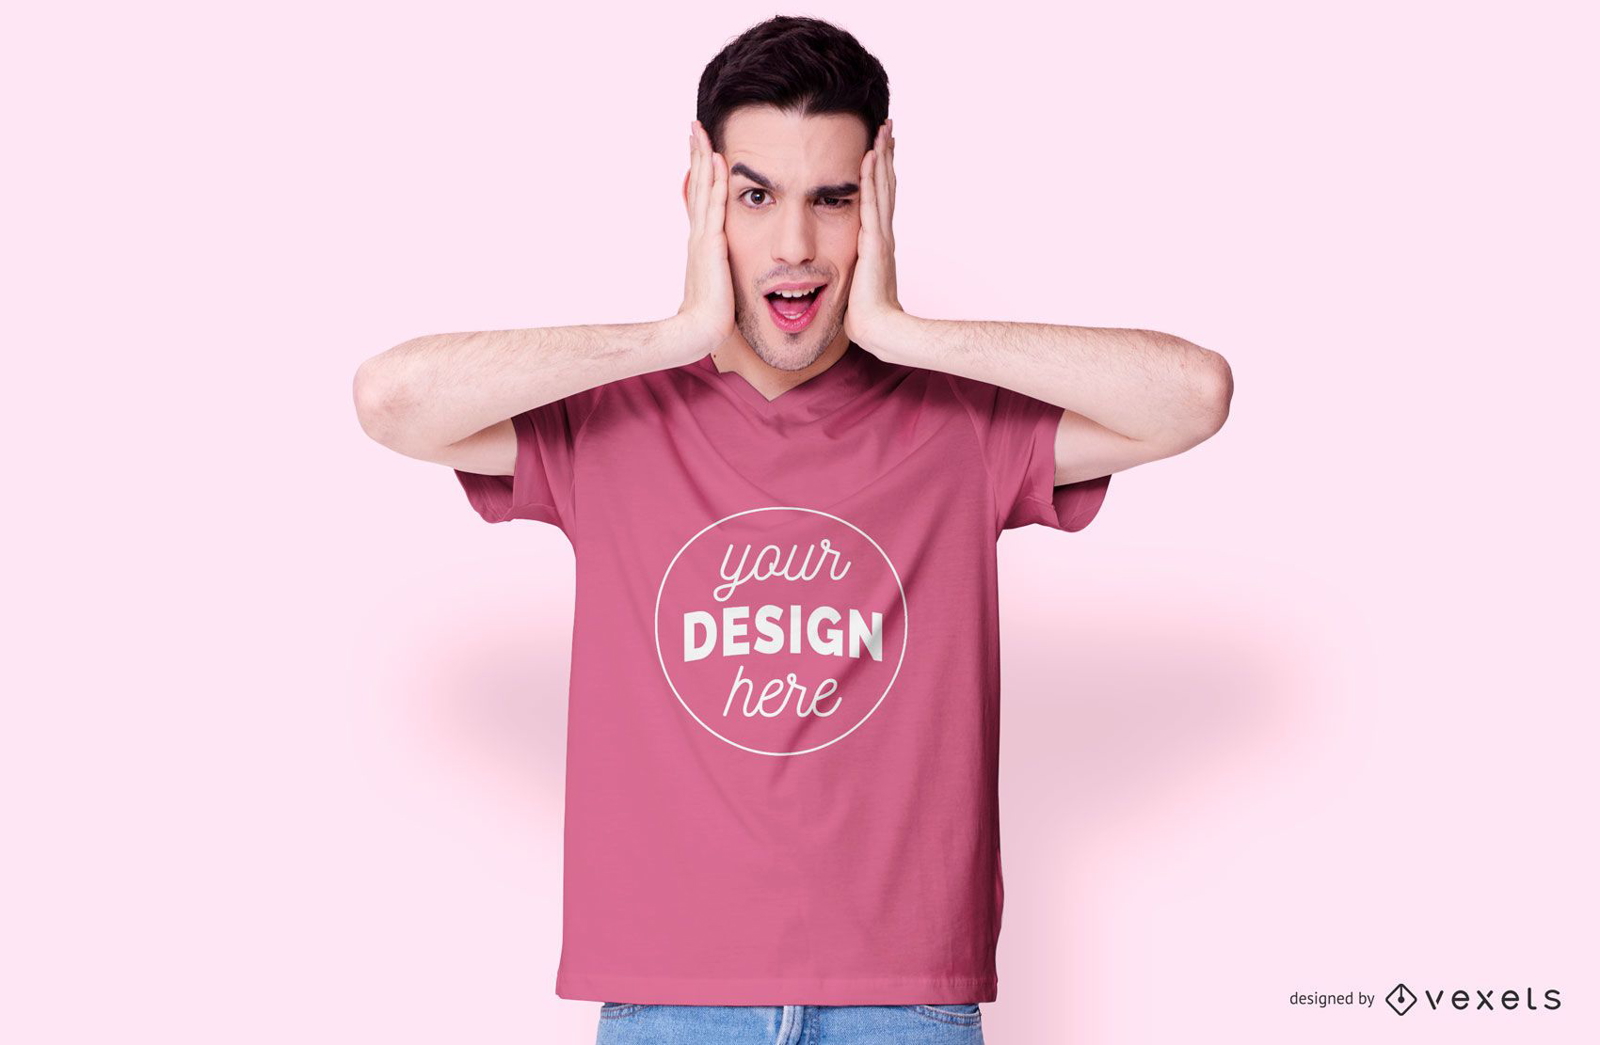 Guy wearing pink t-shirt mockup